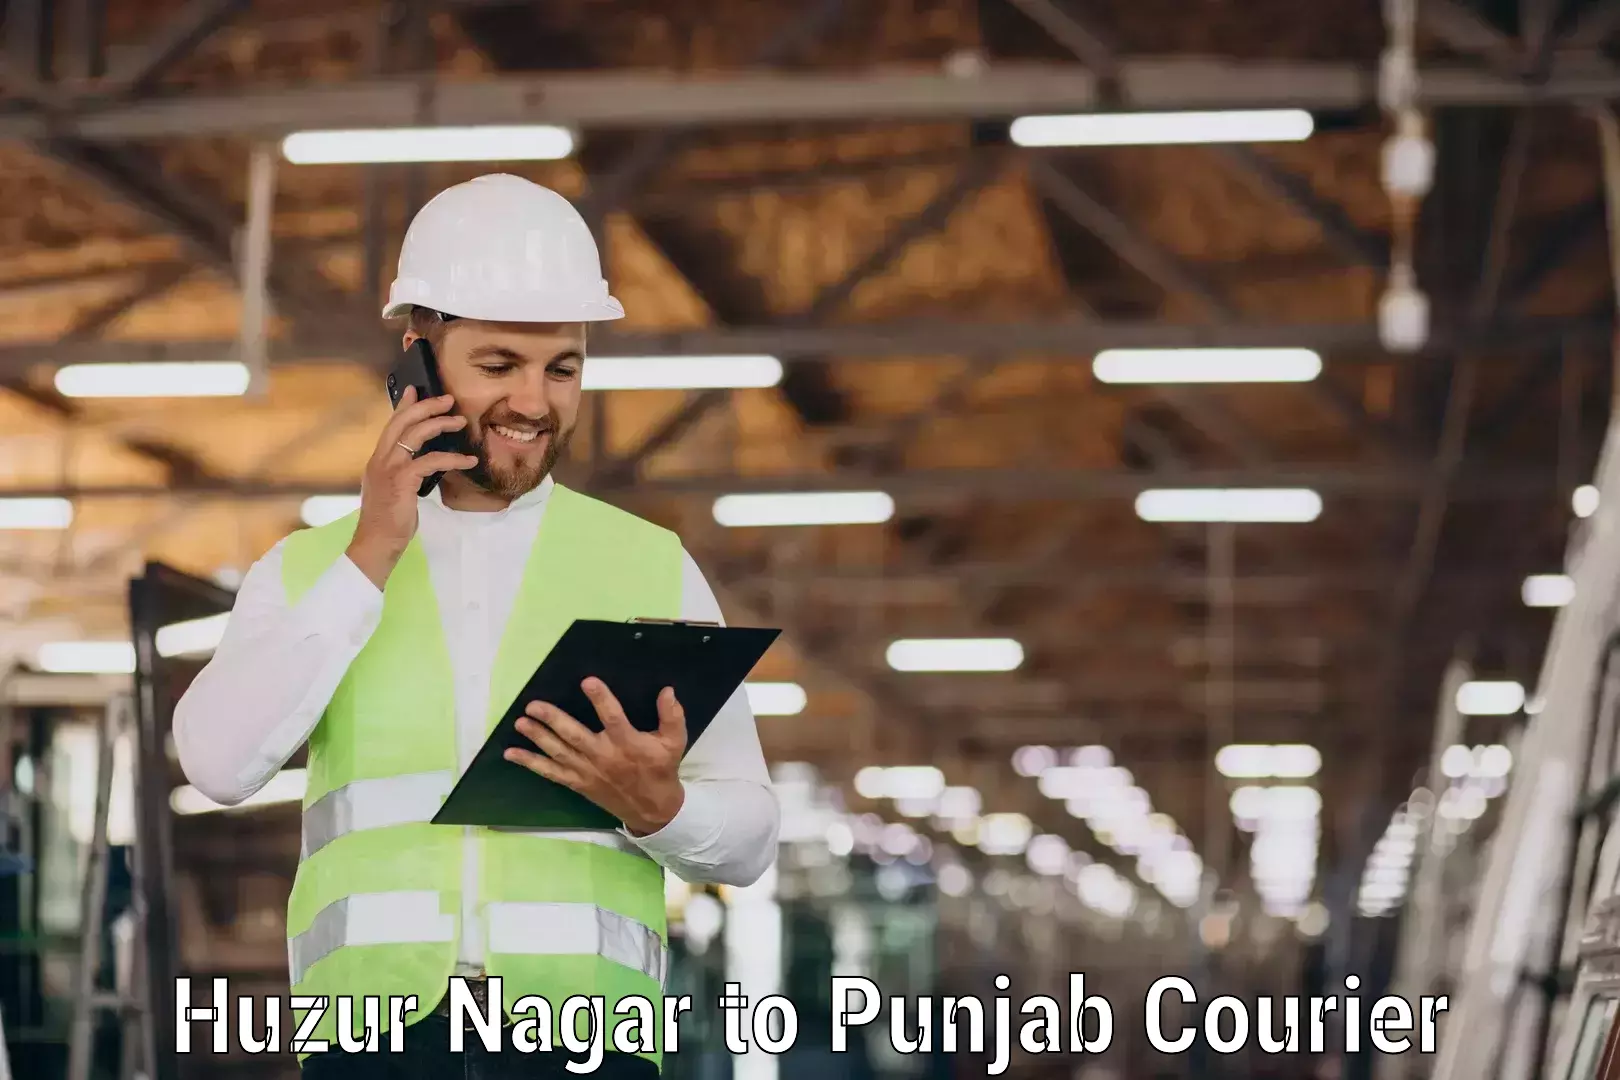 Express shipping Huzur Nagar to Punjab